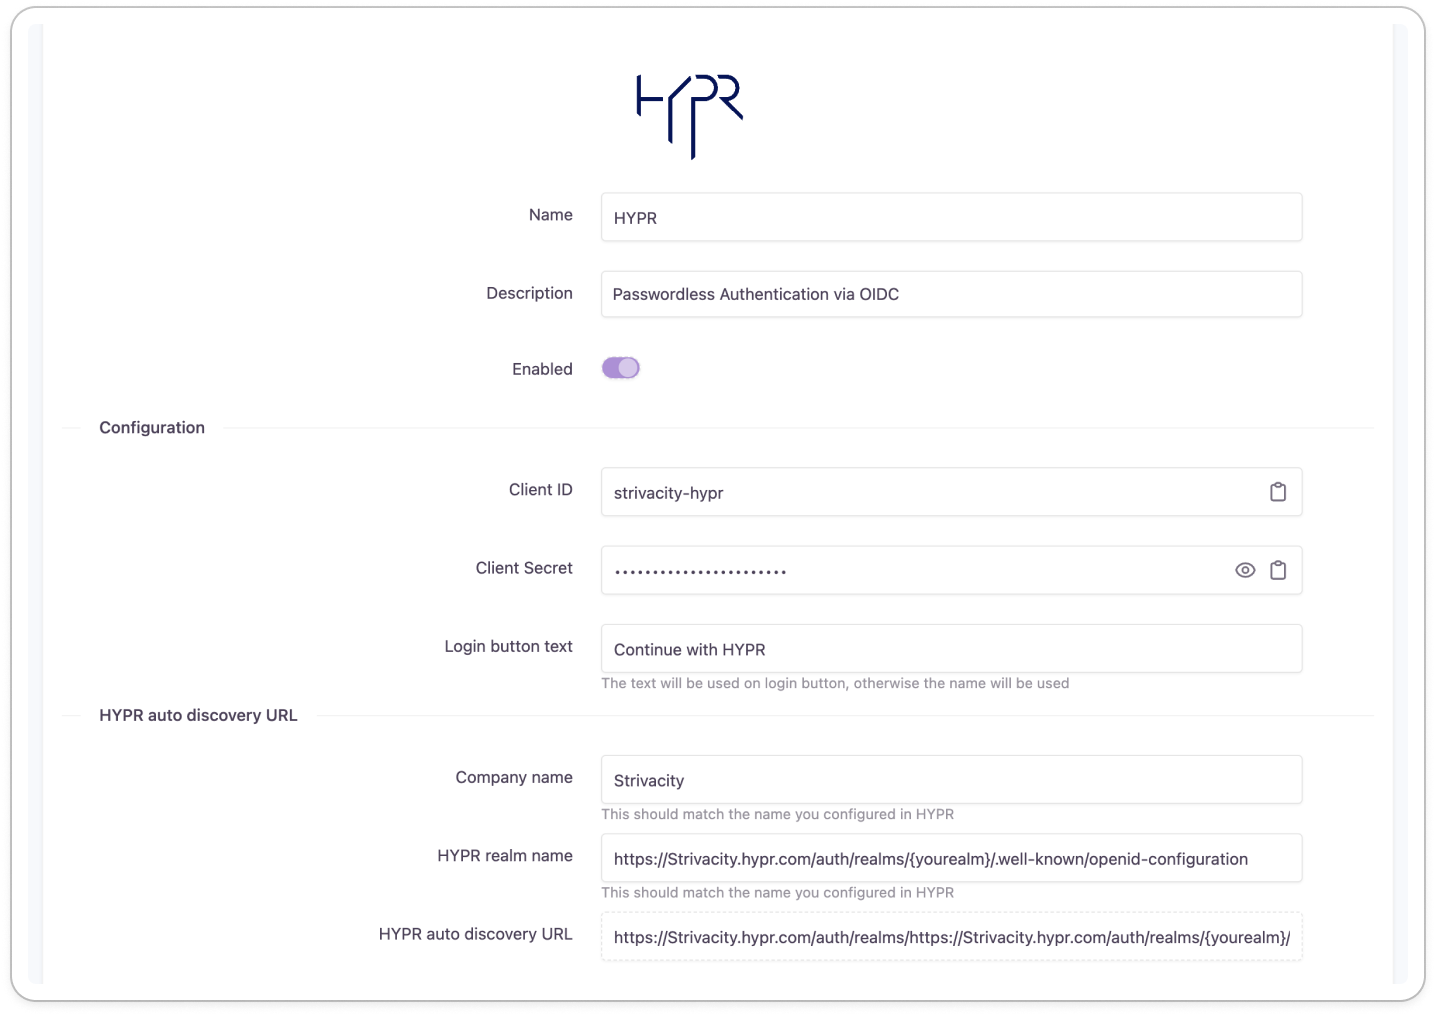 HYPR configuration page